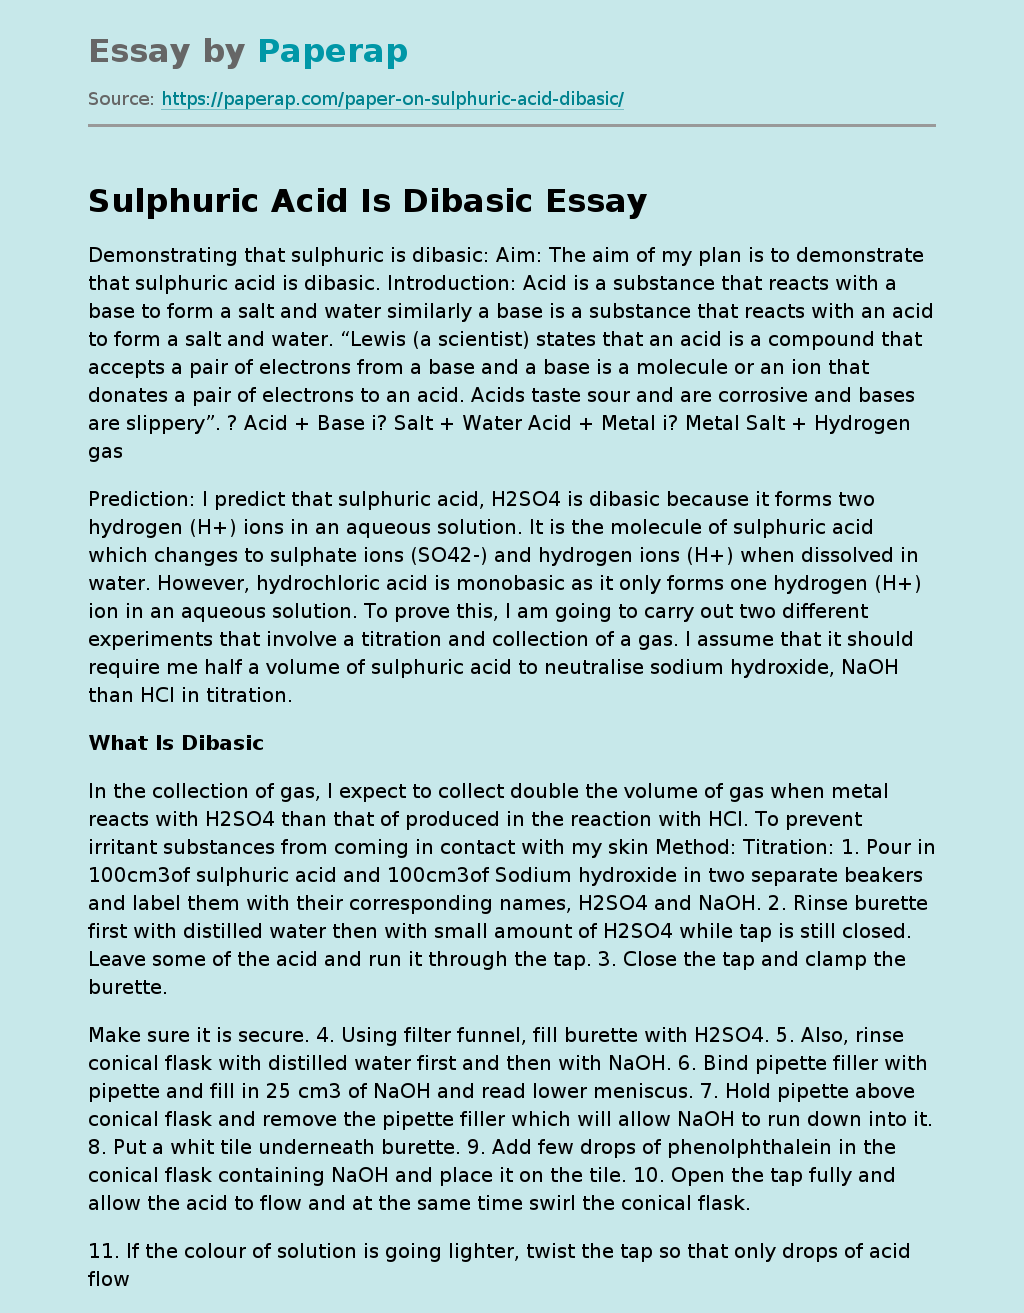 Sulphuric Acid Is Dibasic